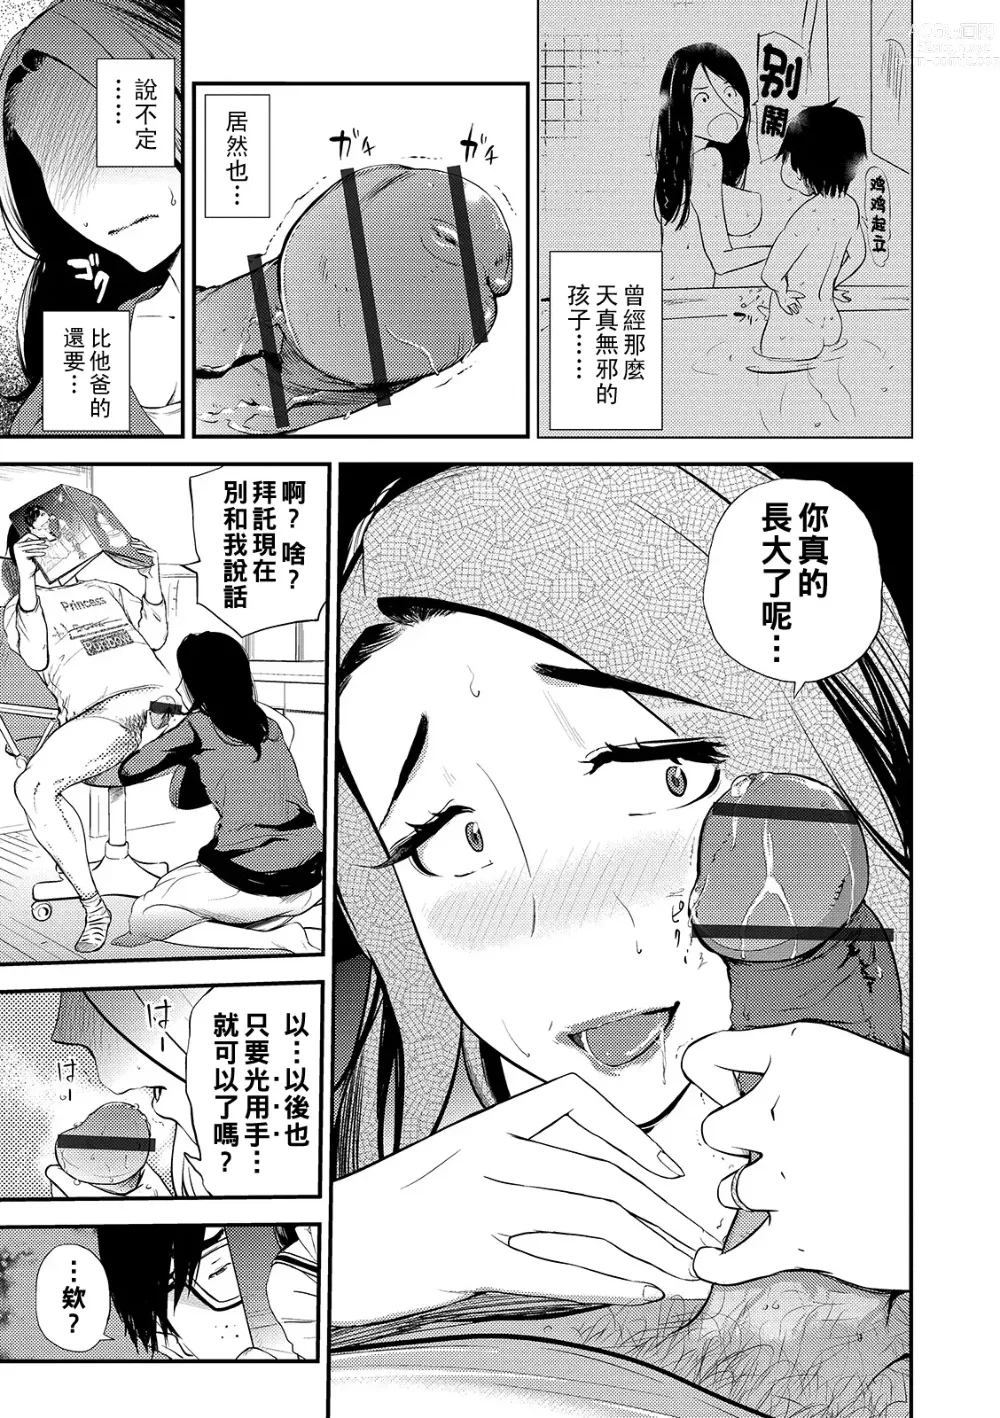 Page 3 of manga Mama no Kitsch Return